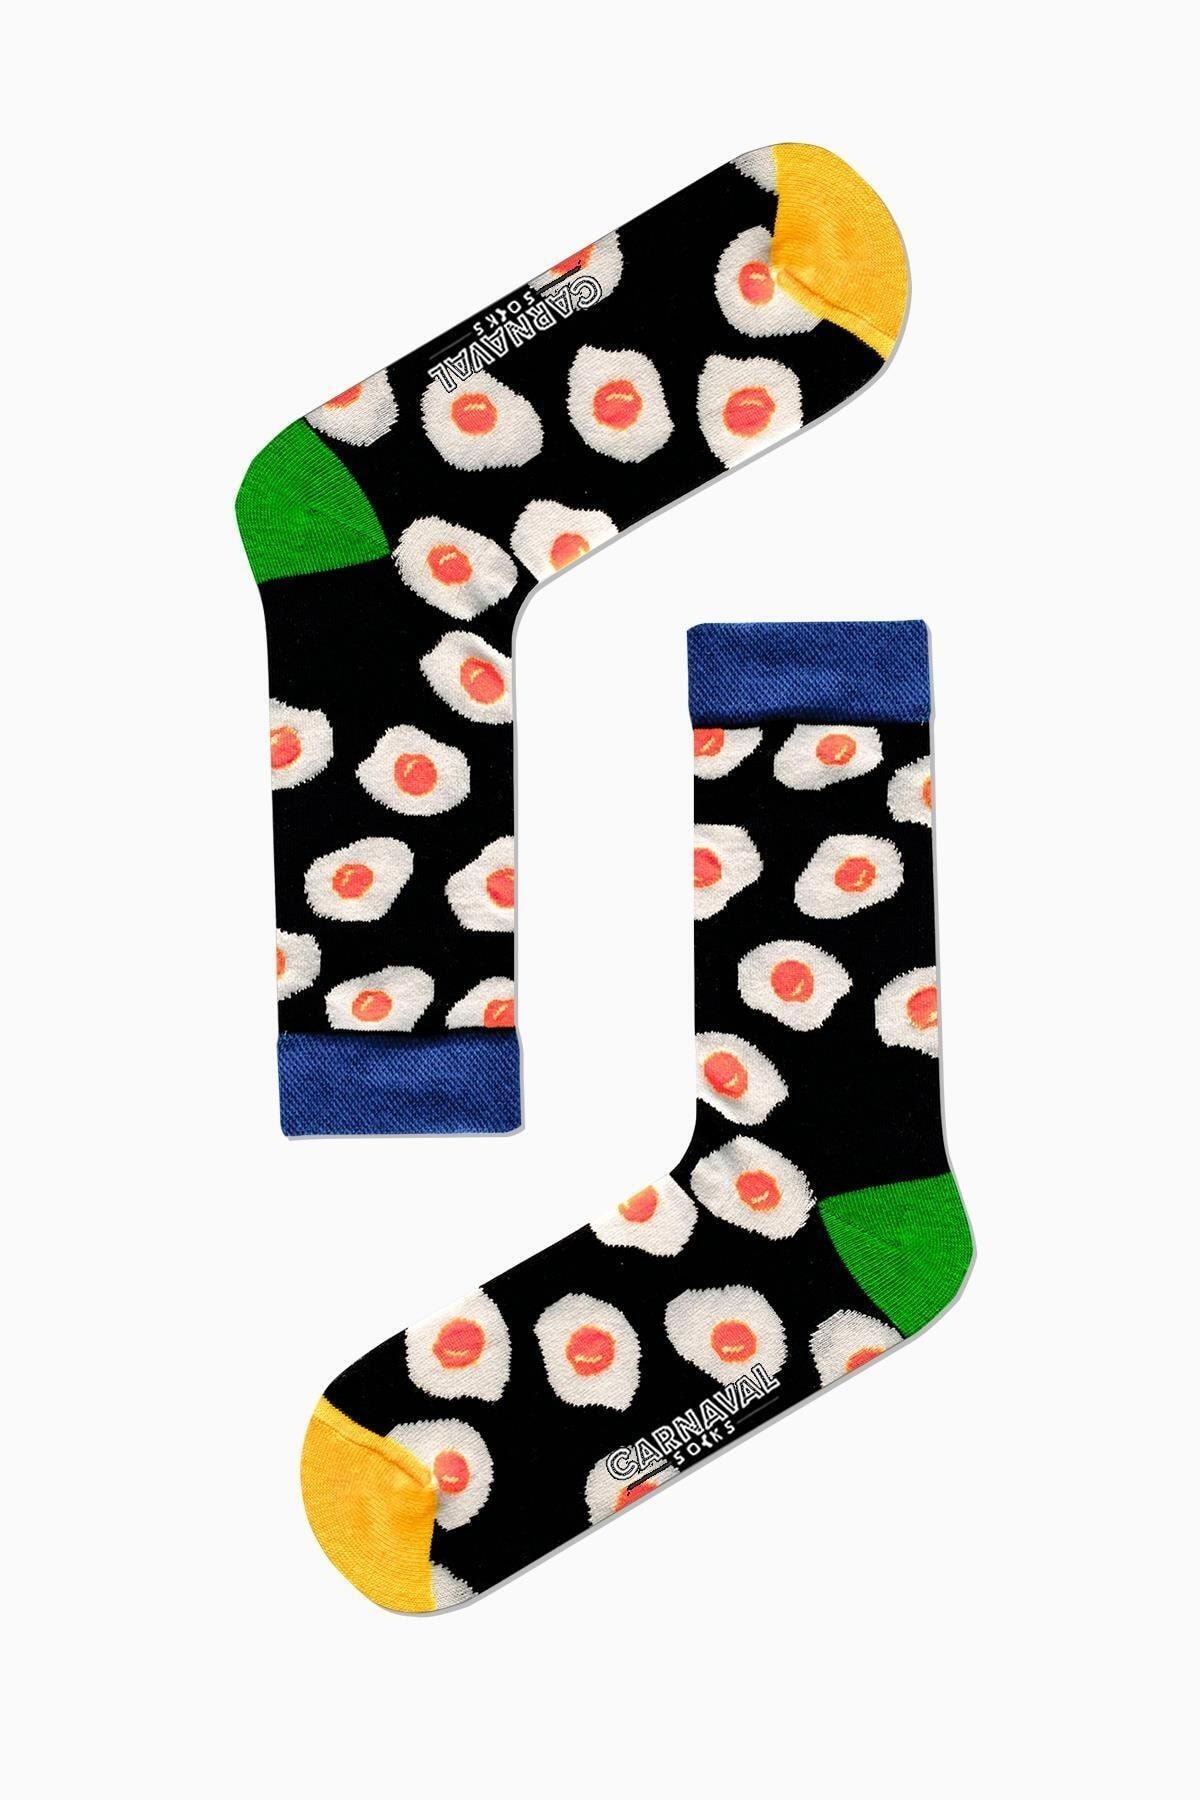 CARNAVAL SOCKS Yumurta Desenli Renkli Çorap